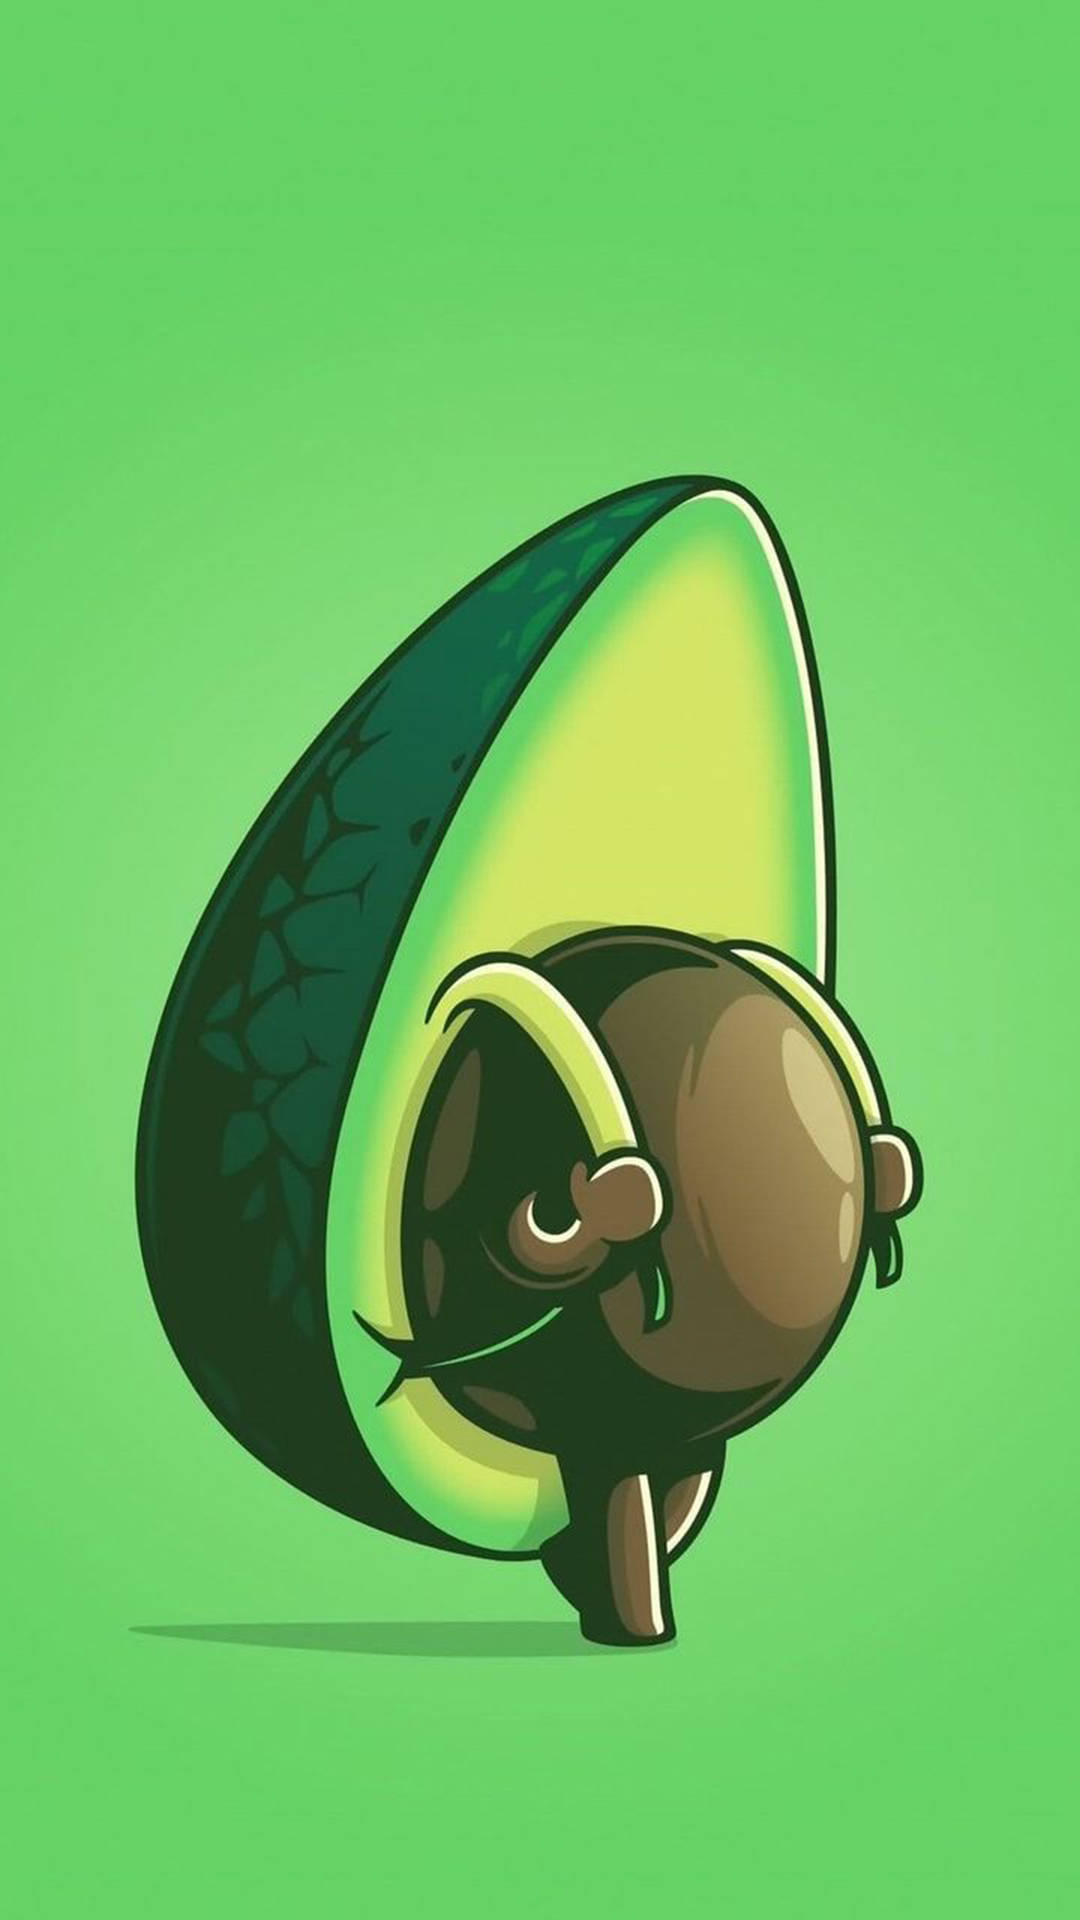 Get Green, Get Cute - Avocado Backpack!